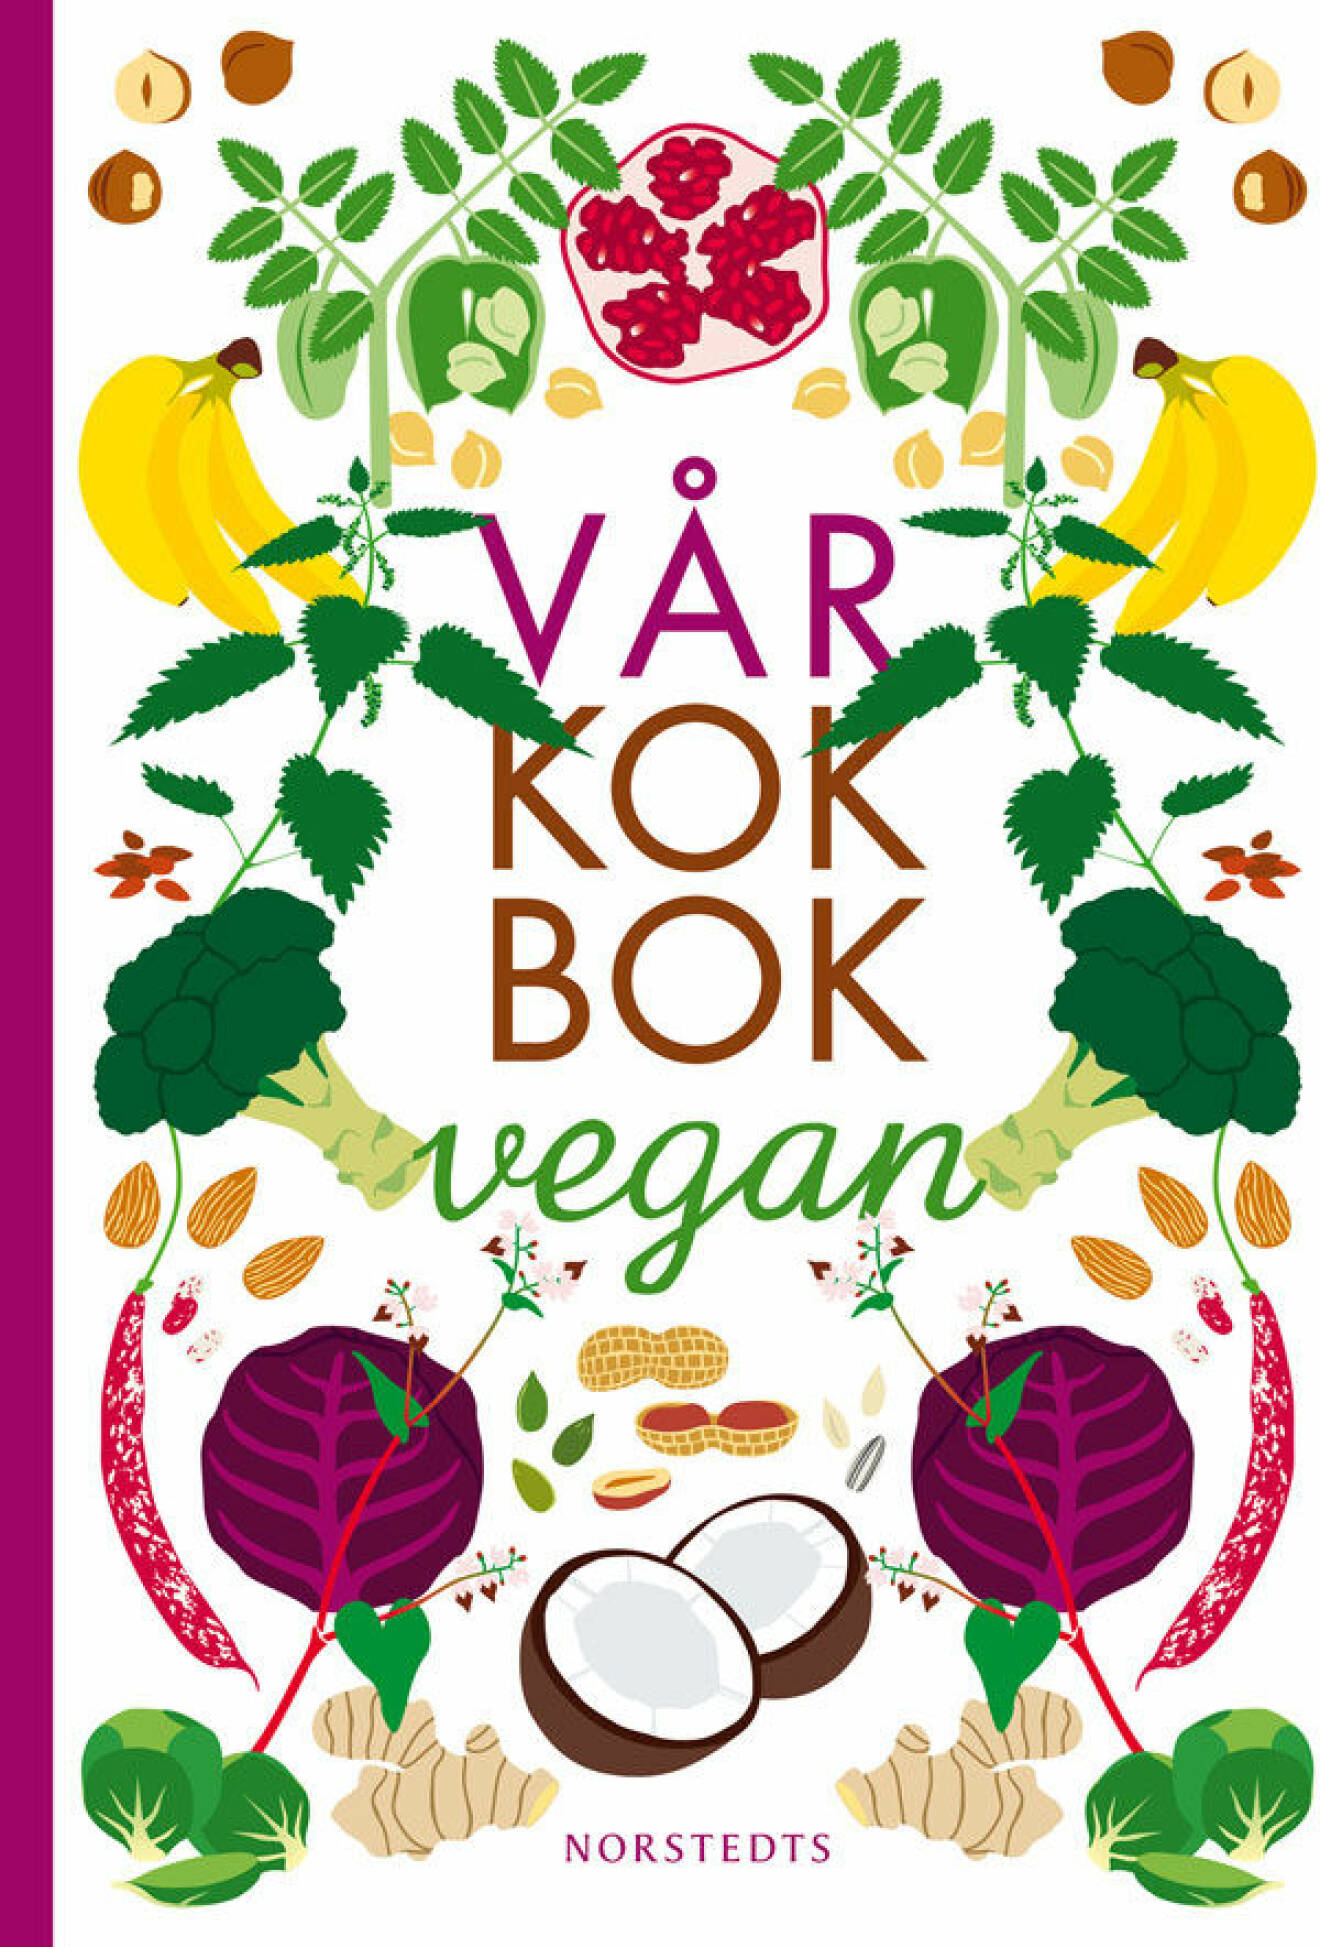 Våg kokbok vegan av Sara Begner